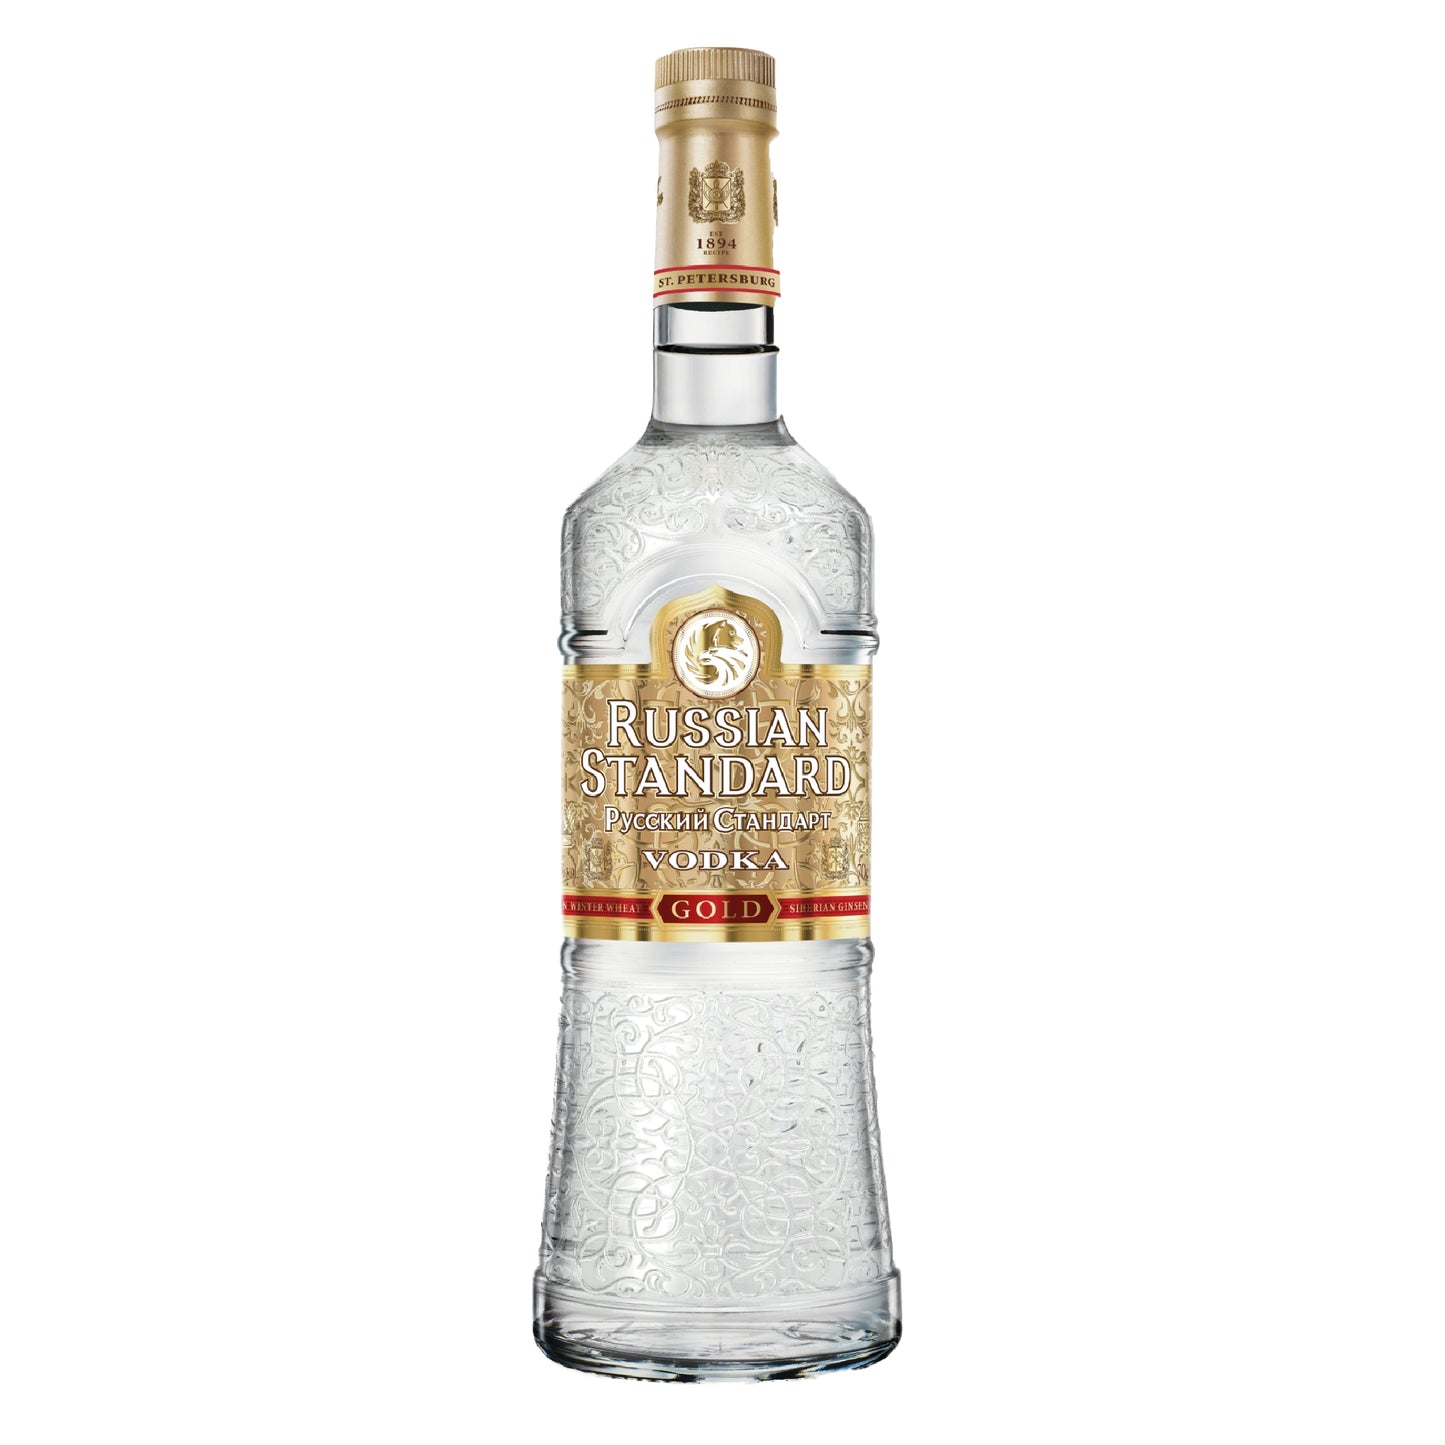 Russian Standard Gold Vodka - Liquor Geeks